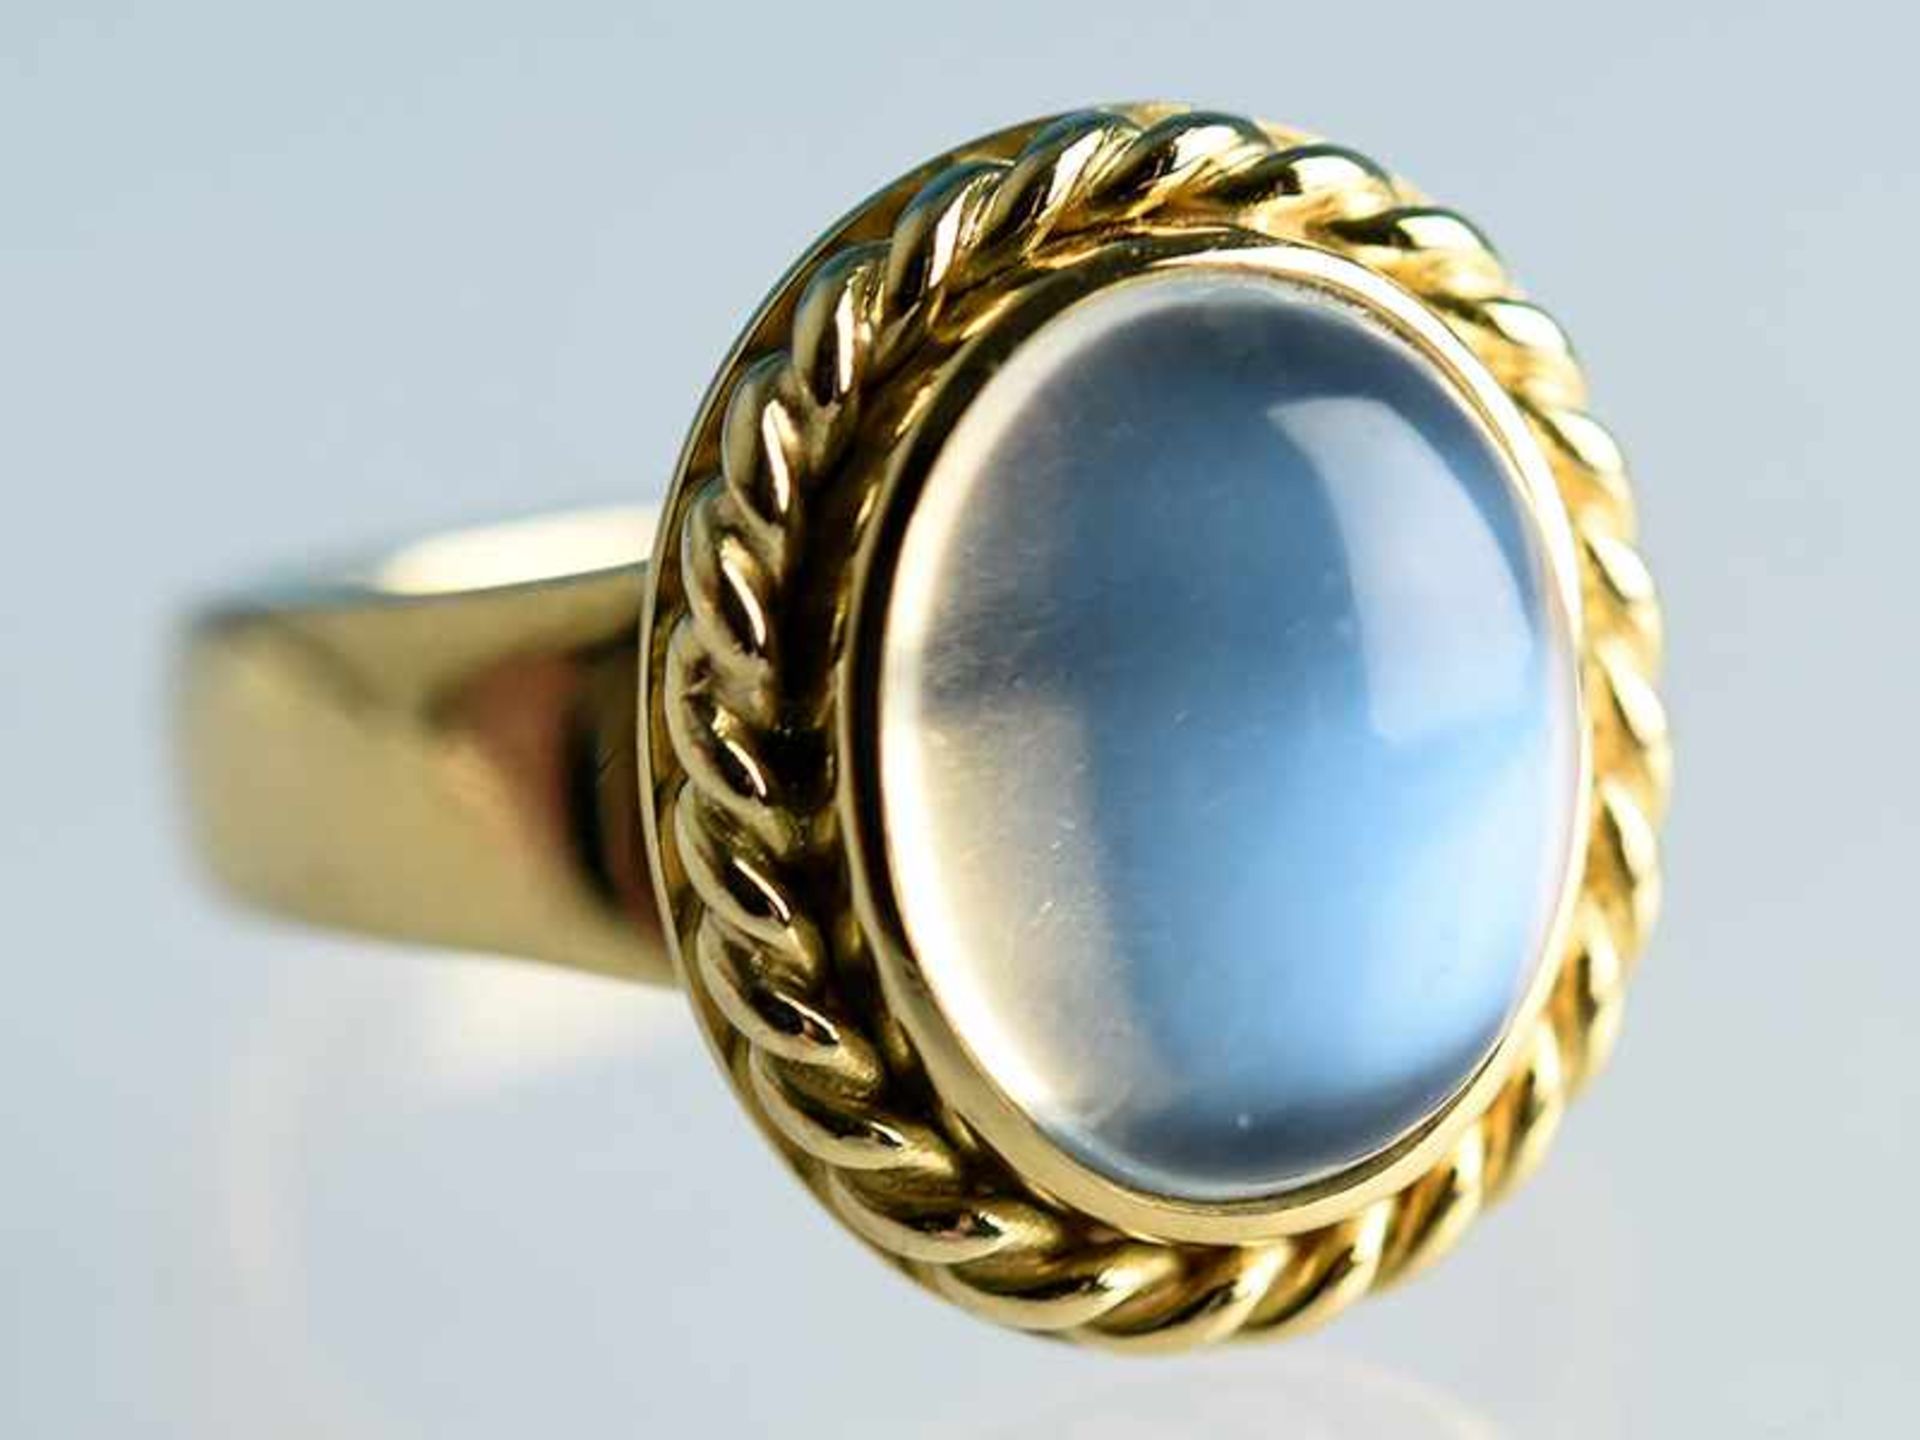 Ring mit Mondstein-Cabochon, Goldschmiedearbeit, 20. Jh. 750/- Gelbgold. Gesamtgewicht ca. 9,2 g.